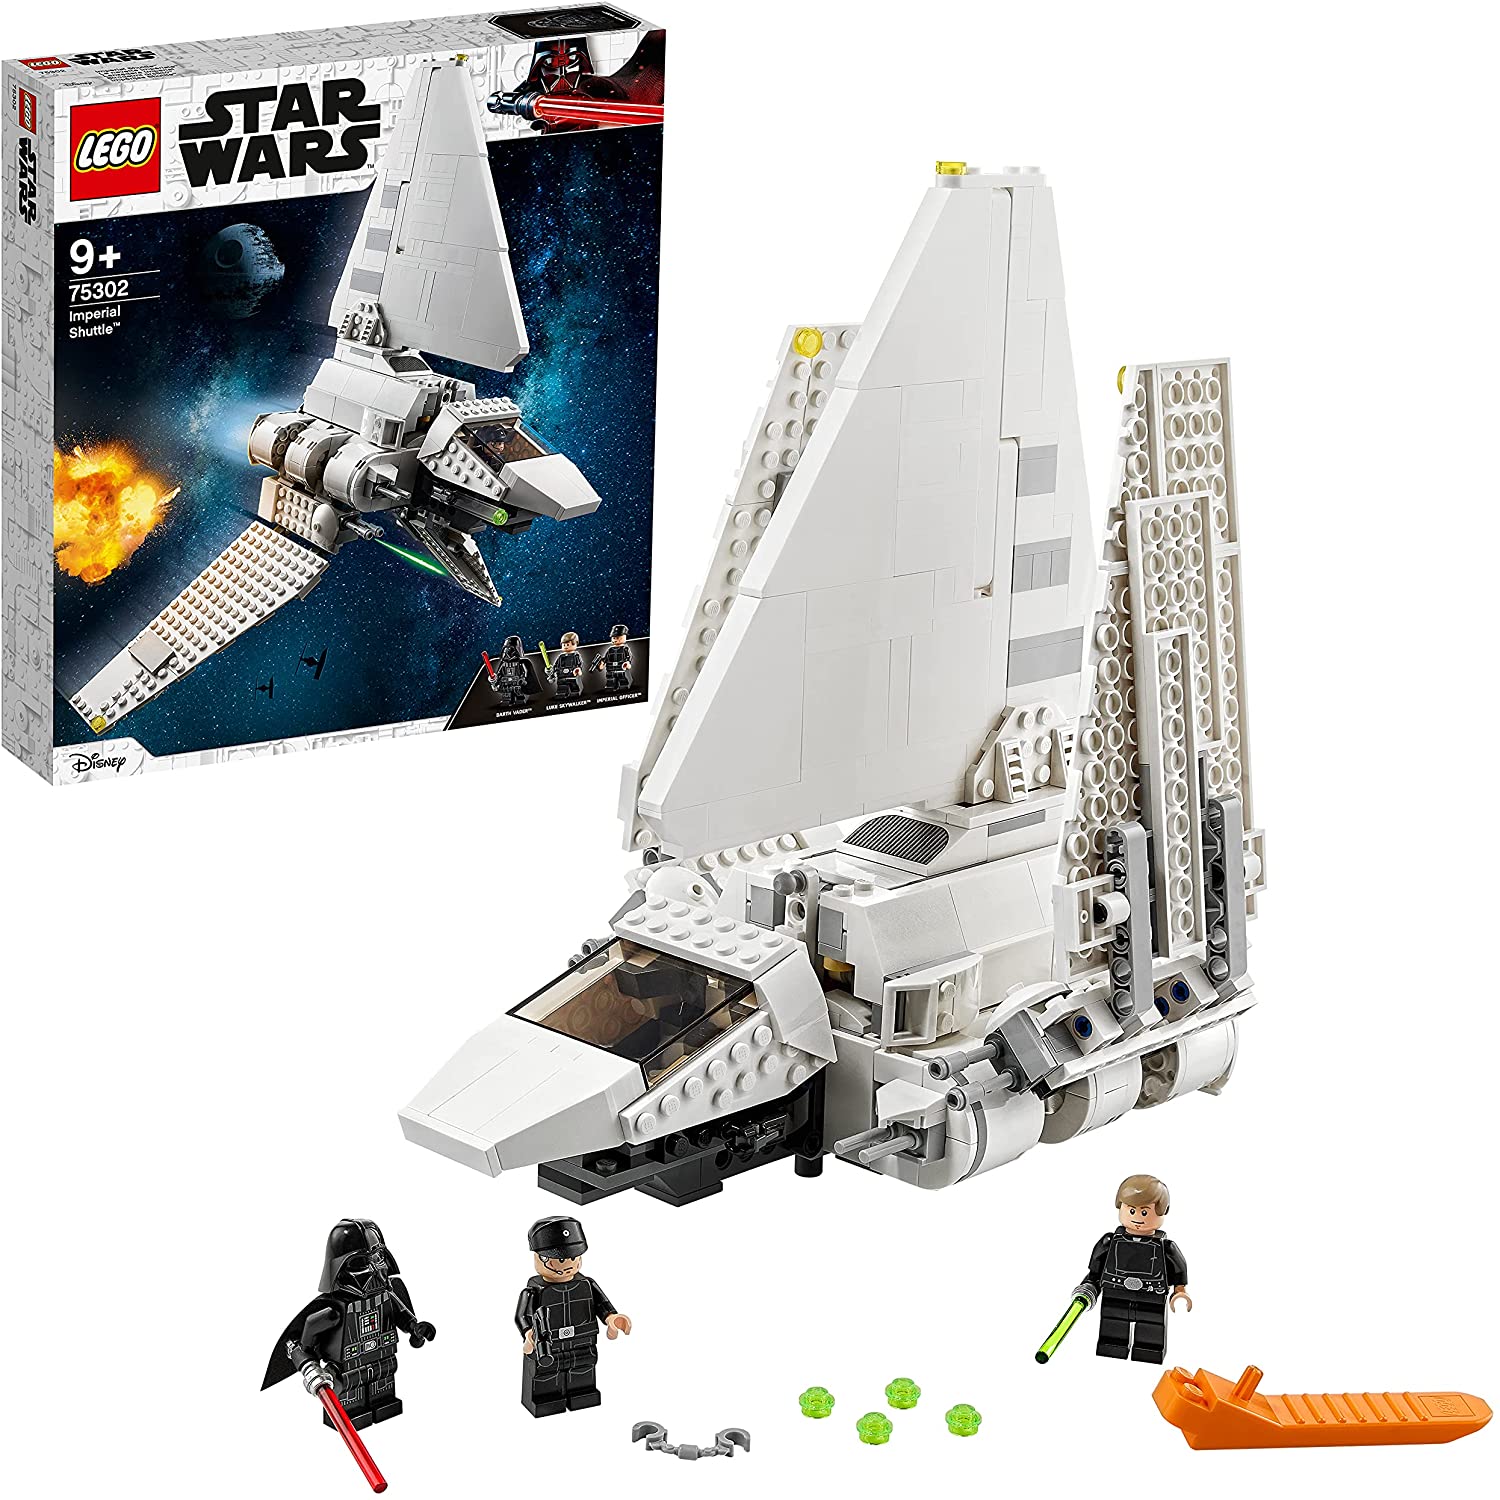  LEGO 75302 Star Wars Imperial Shuttle Bauset mit Luke Skywalker mit Lichtschwert und Darth Vader Minifiguren